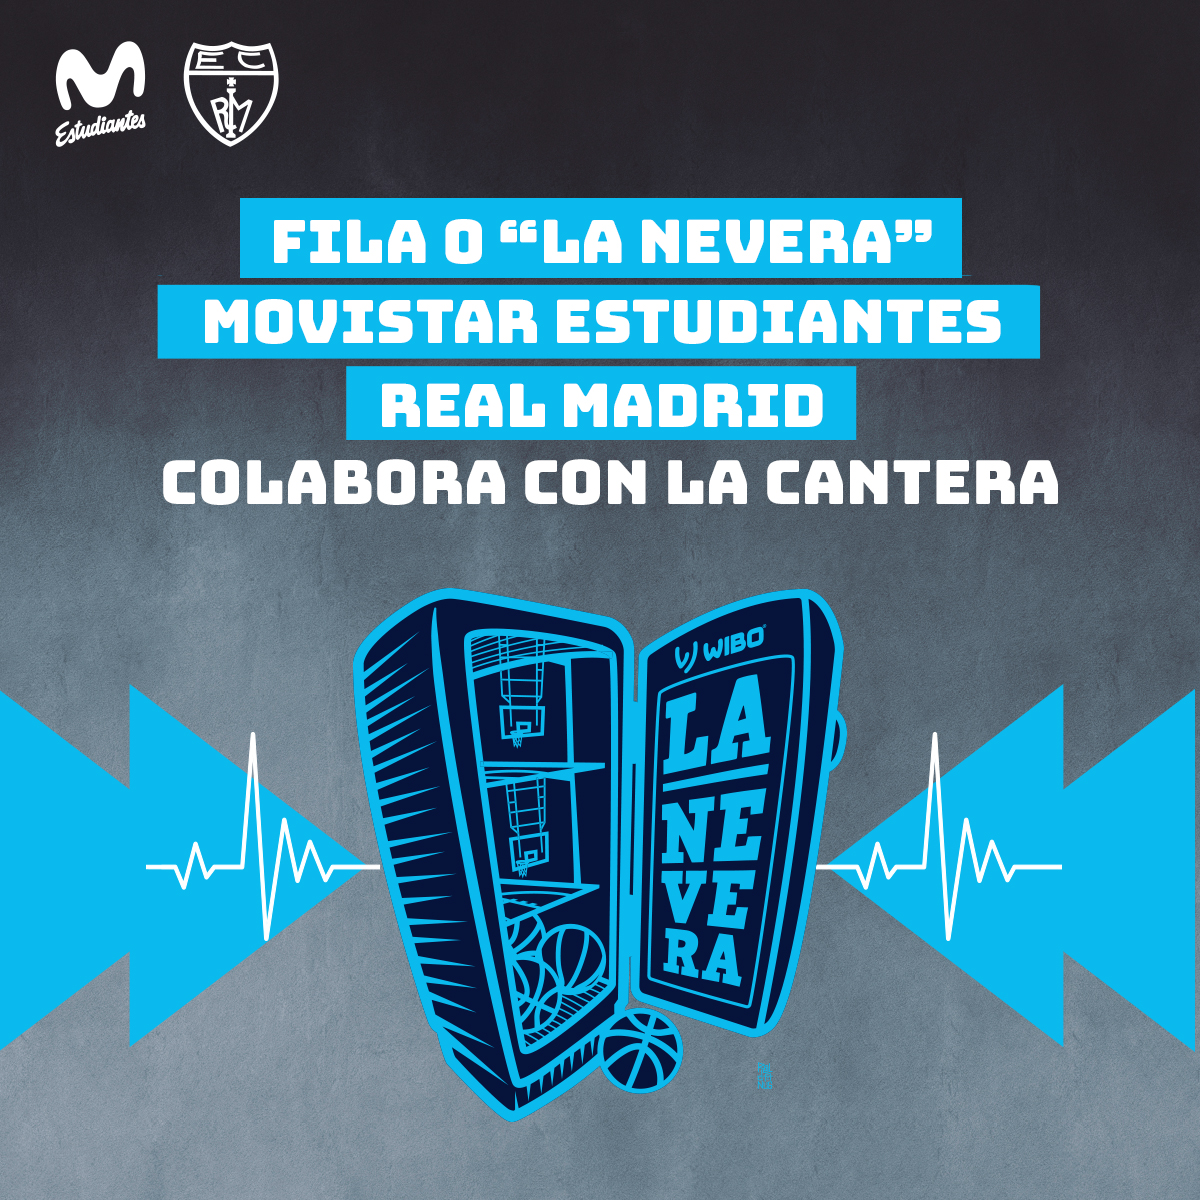 Fila 0 «La Nevera» para el derbi. Colabora con la cantera de Movistar Estudiantes y llévate una camiseta exclusiva